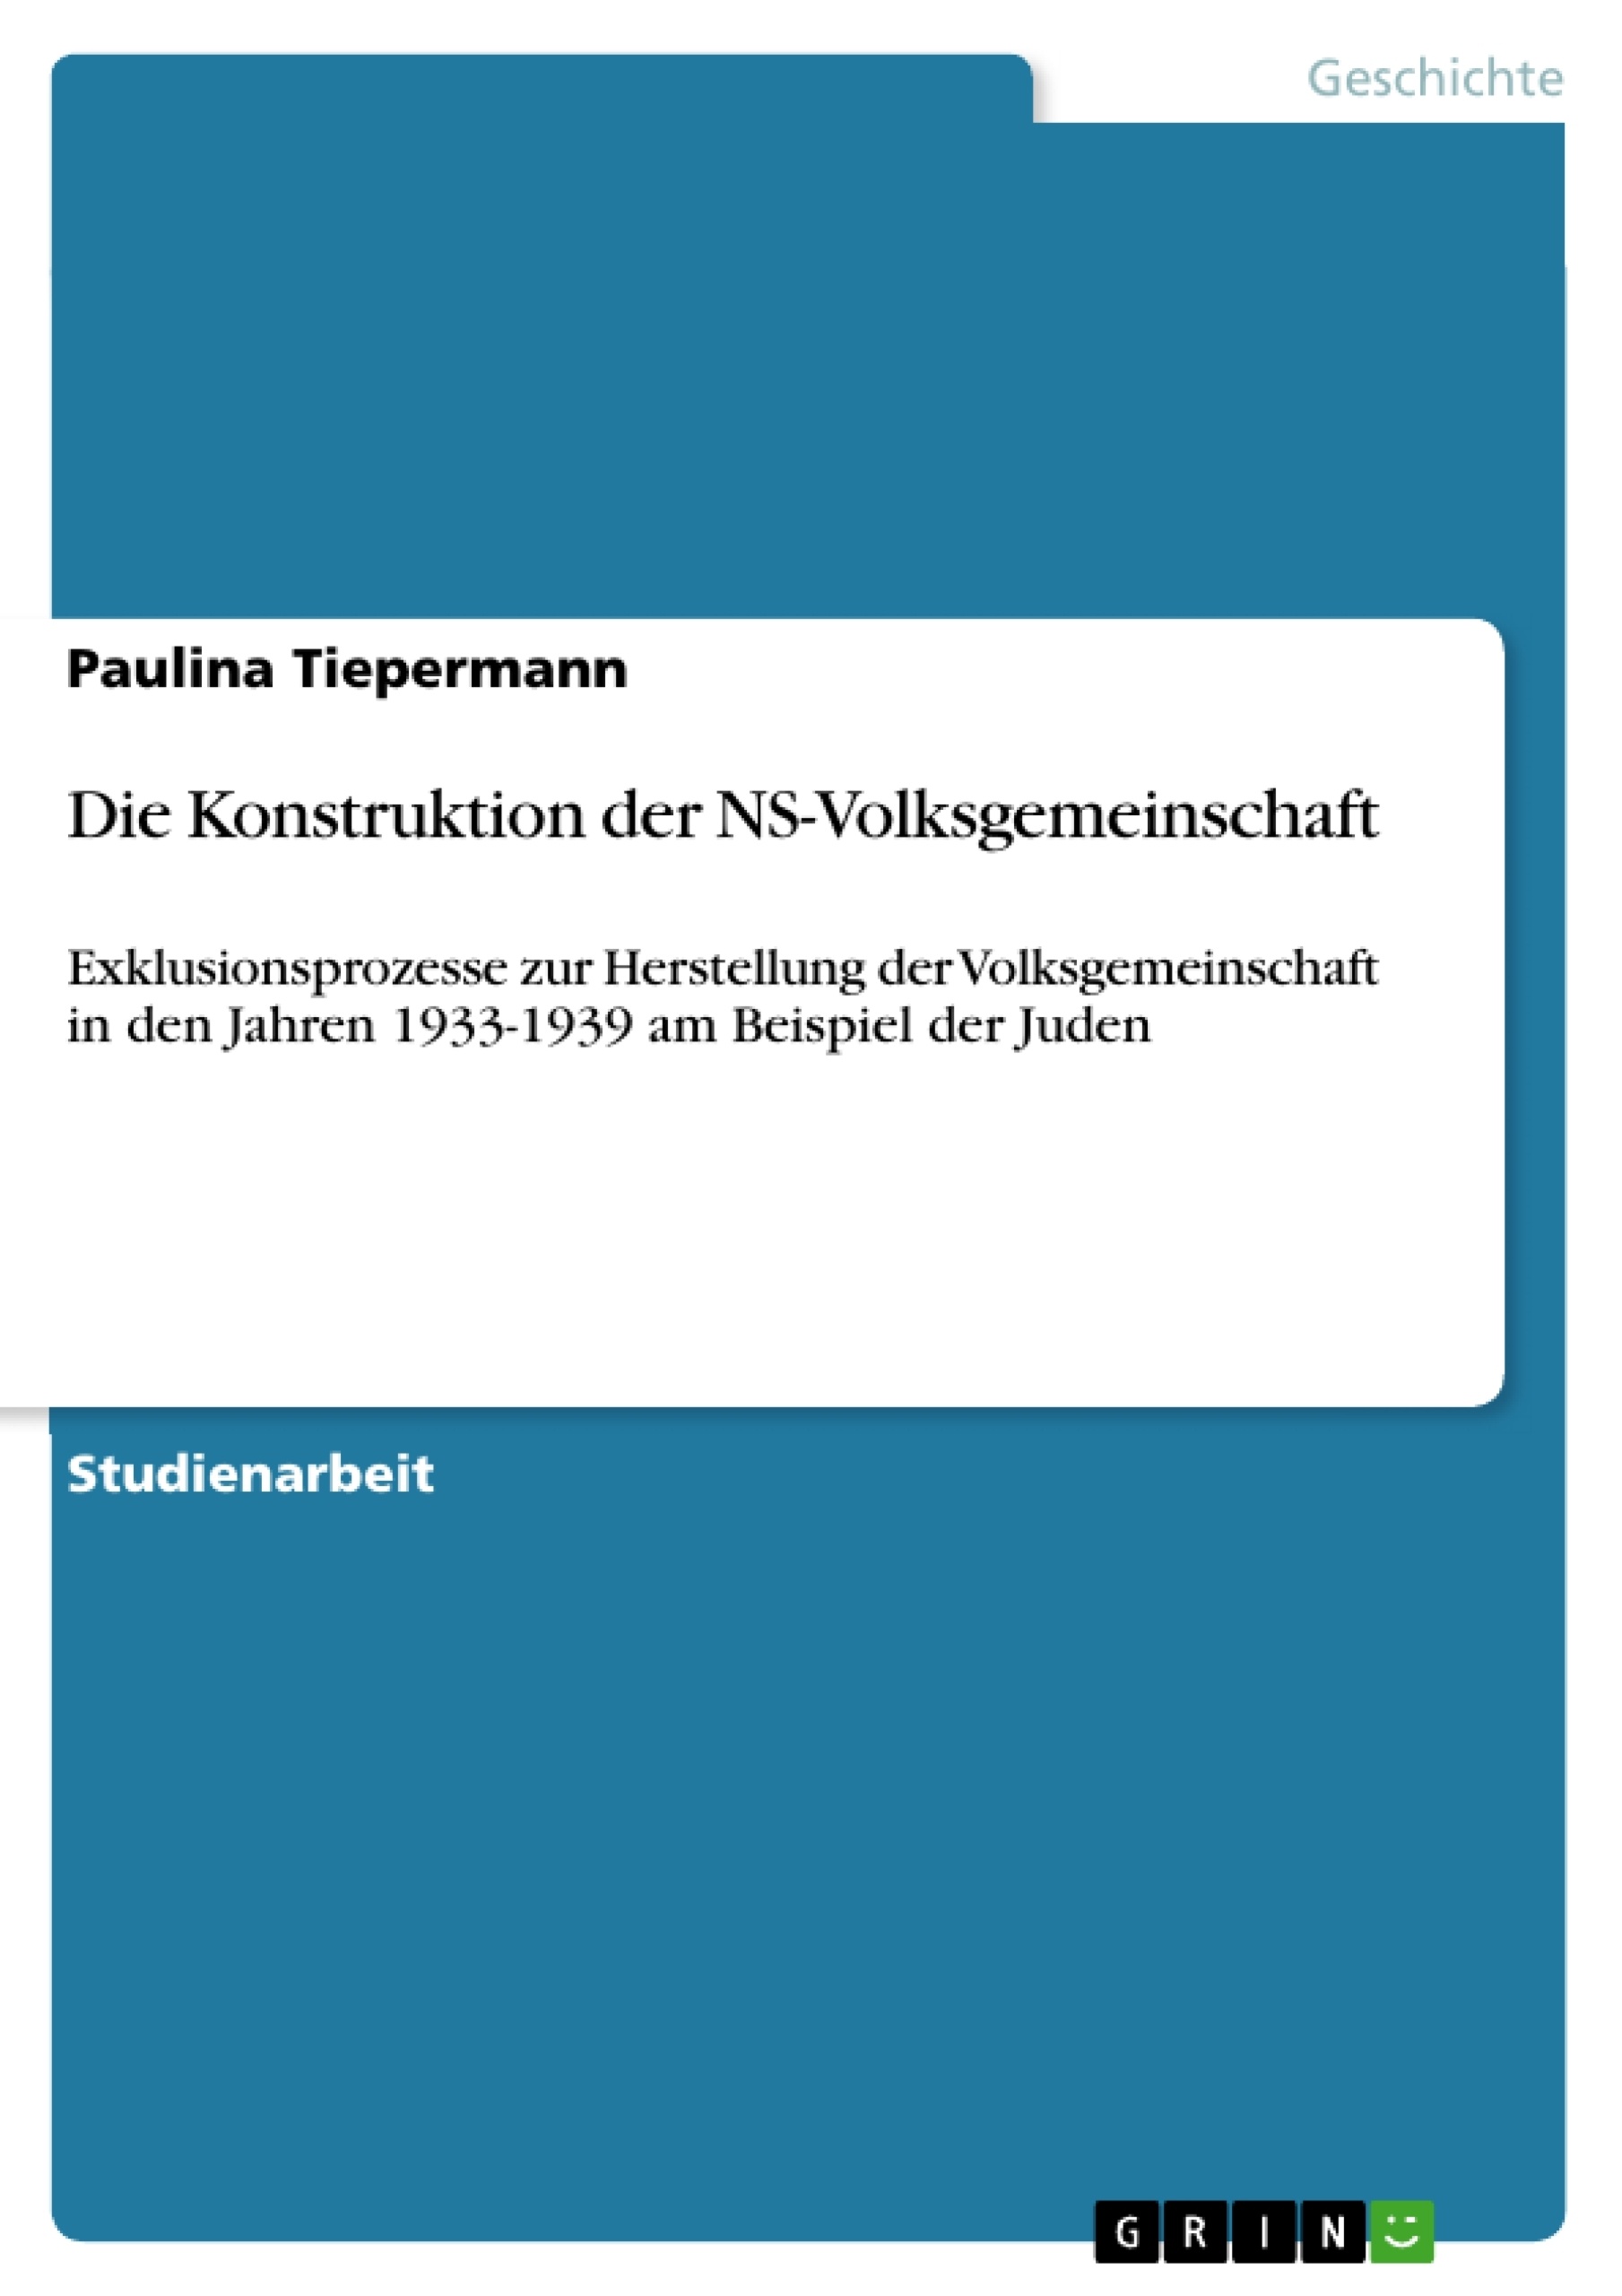 Título: Die Konstruktion der NS-Volksgemeinschaft